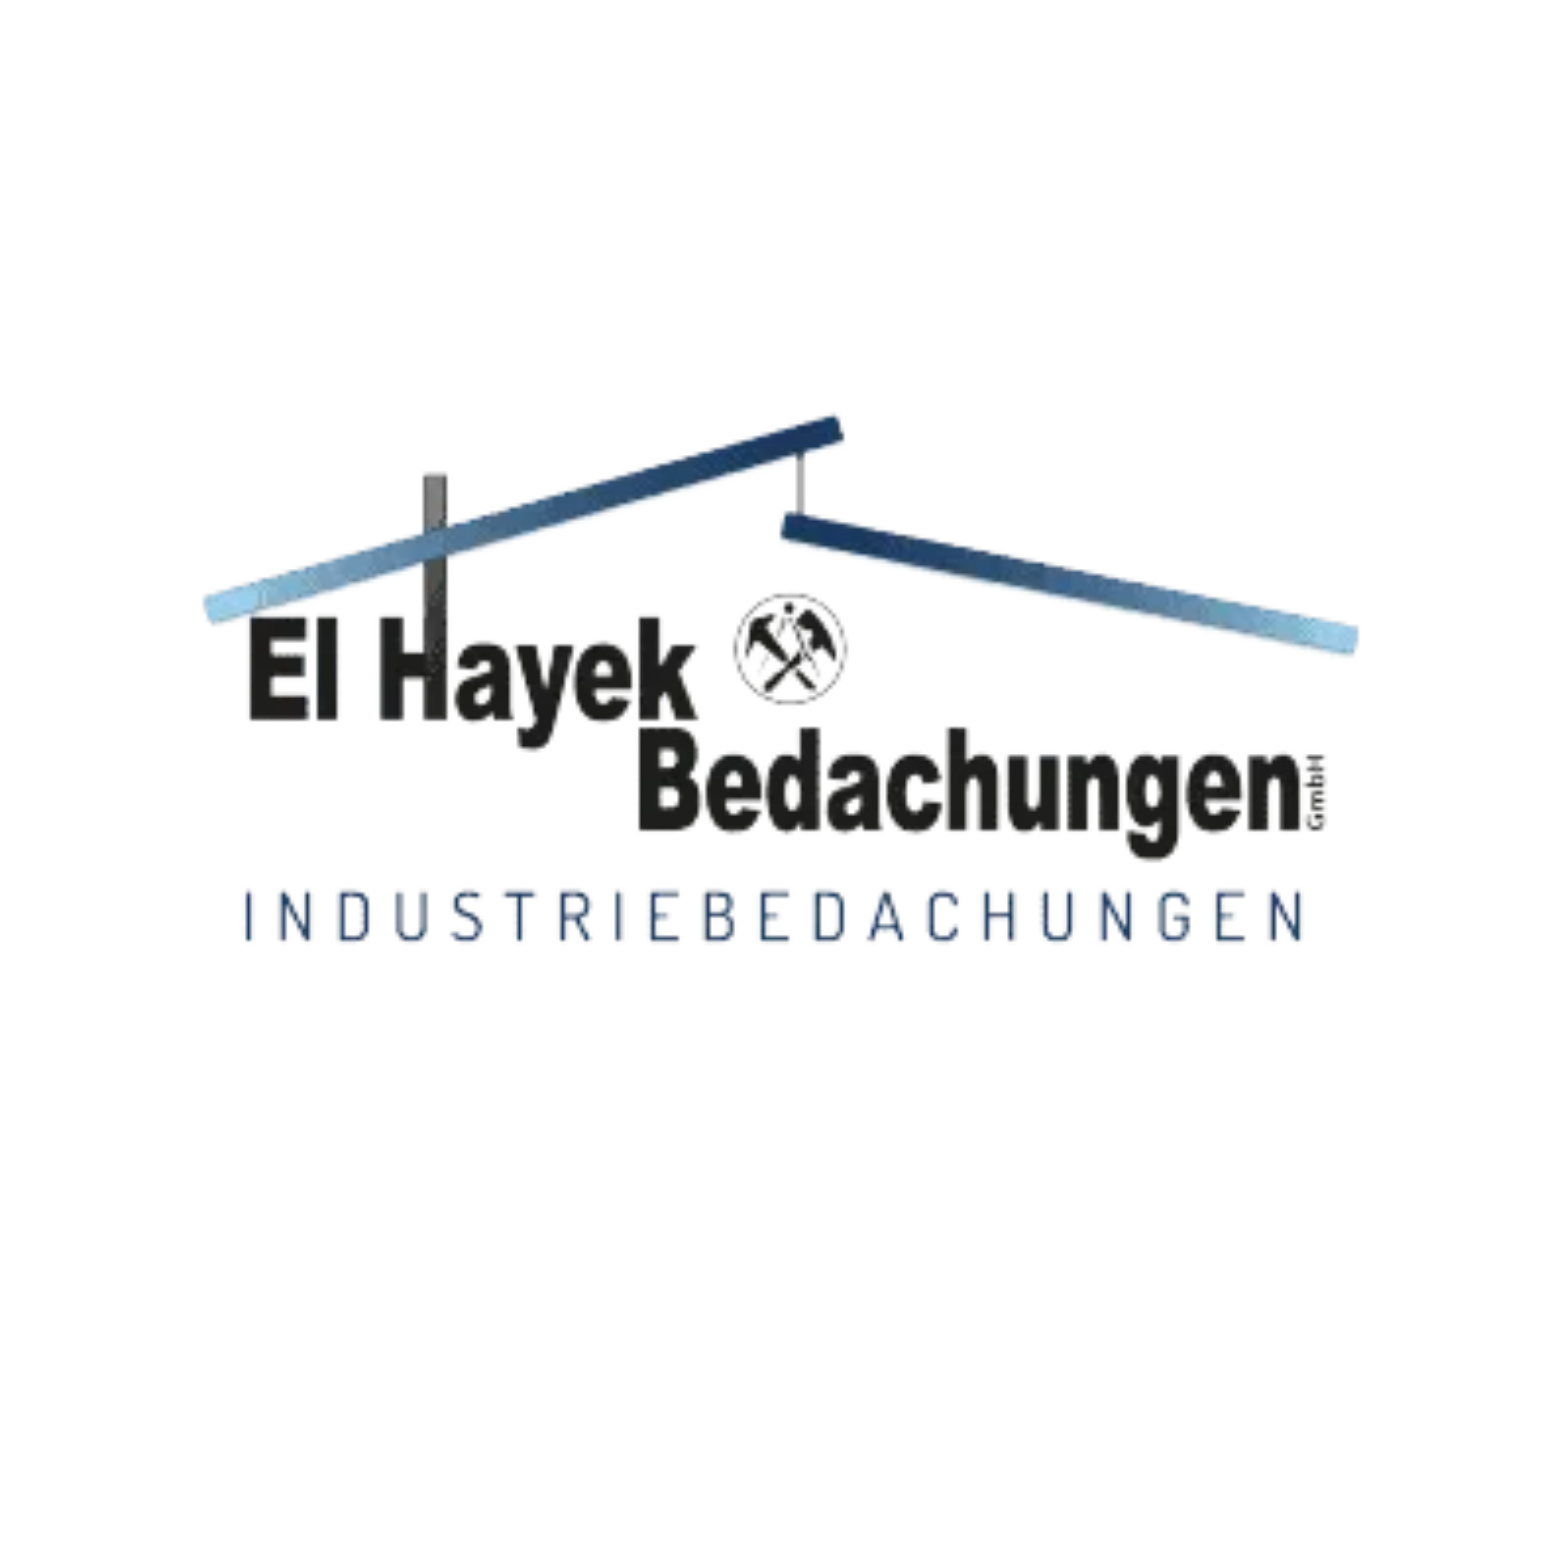 Hayek-Bedachungen-Logo.png